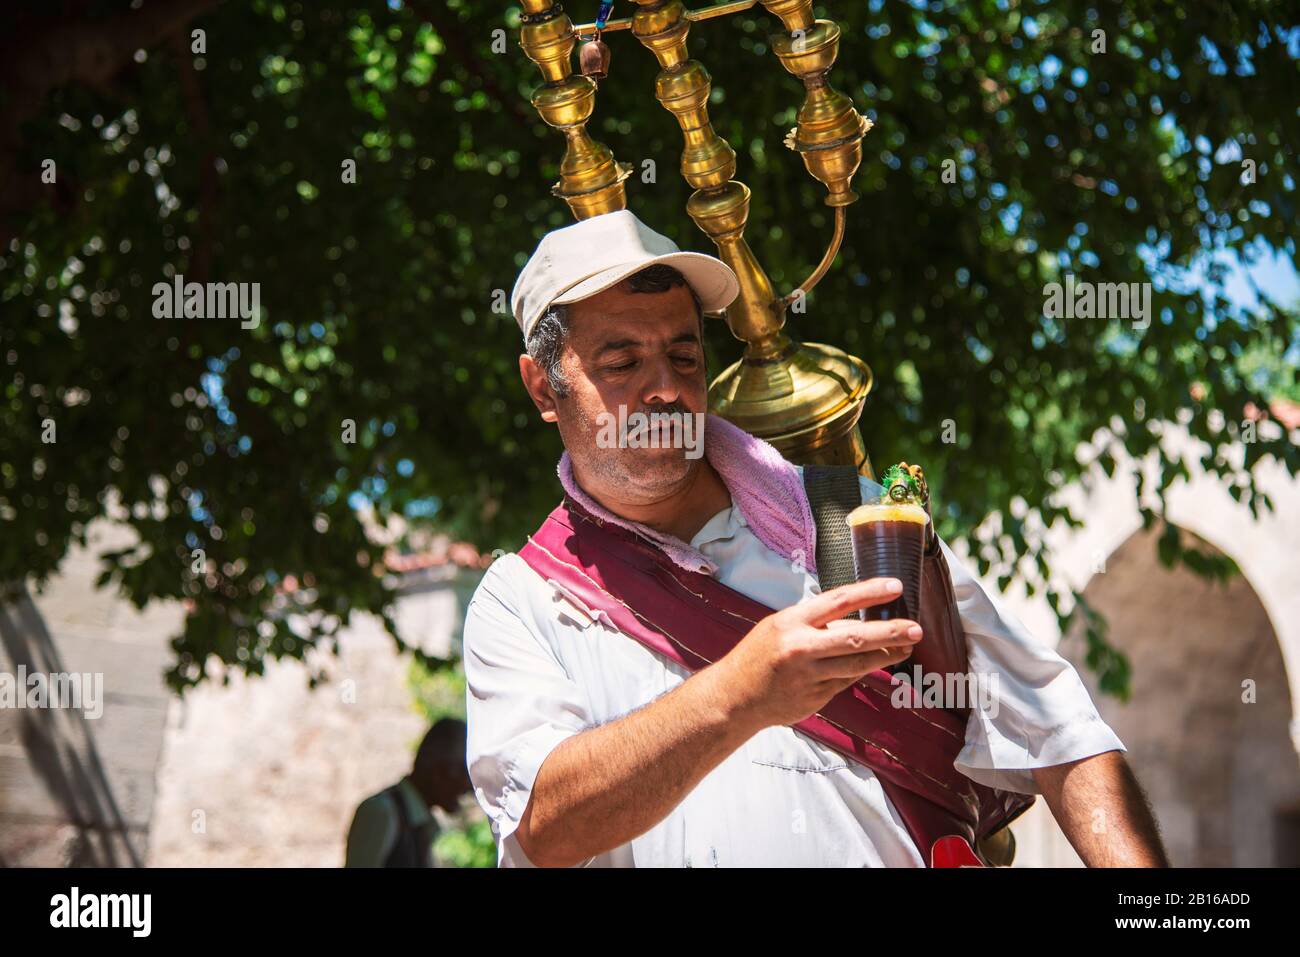 Adana, Turchia - 27 giugno 2019: Ritratto di un venditore tradizionale Di Bevande di Sira con attrezzatura tradizionale ad Adana Turchia. Foto Stock